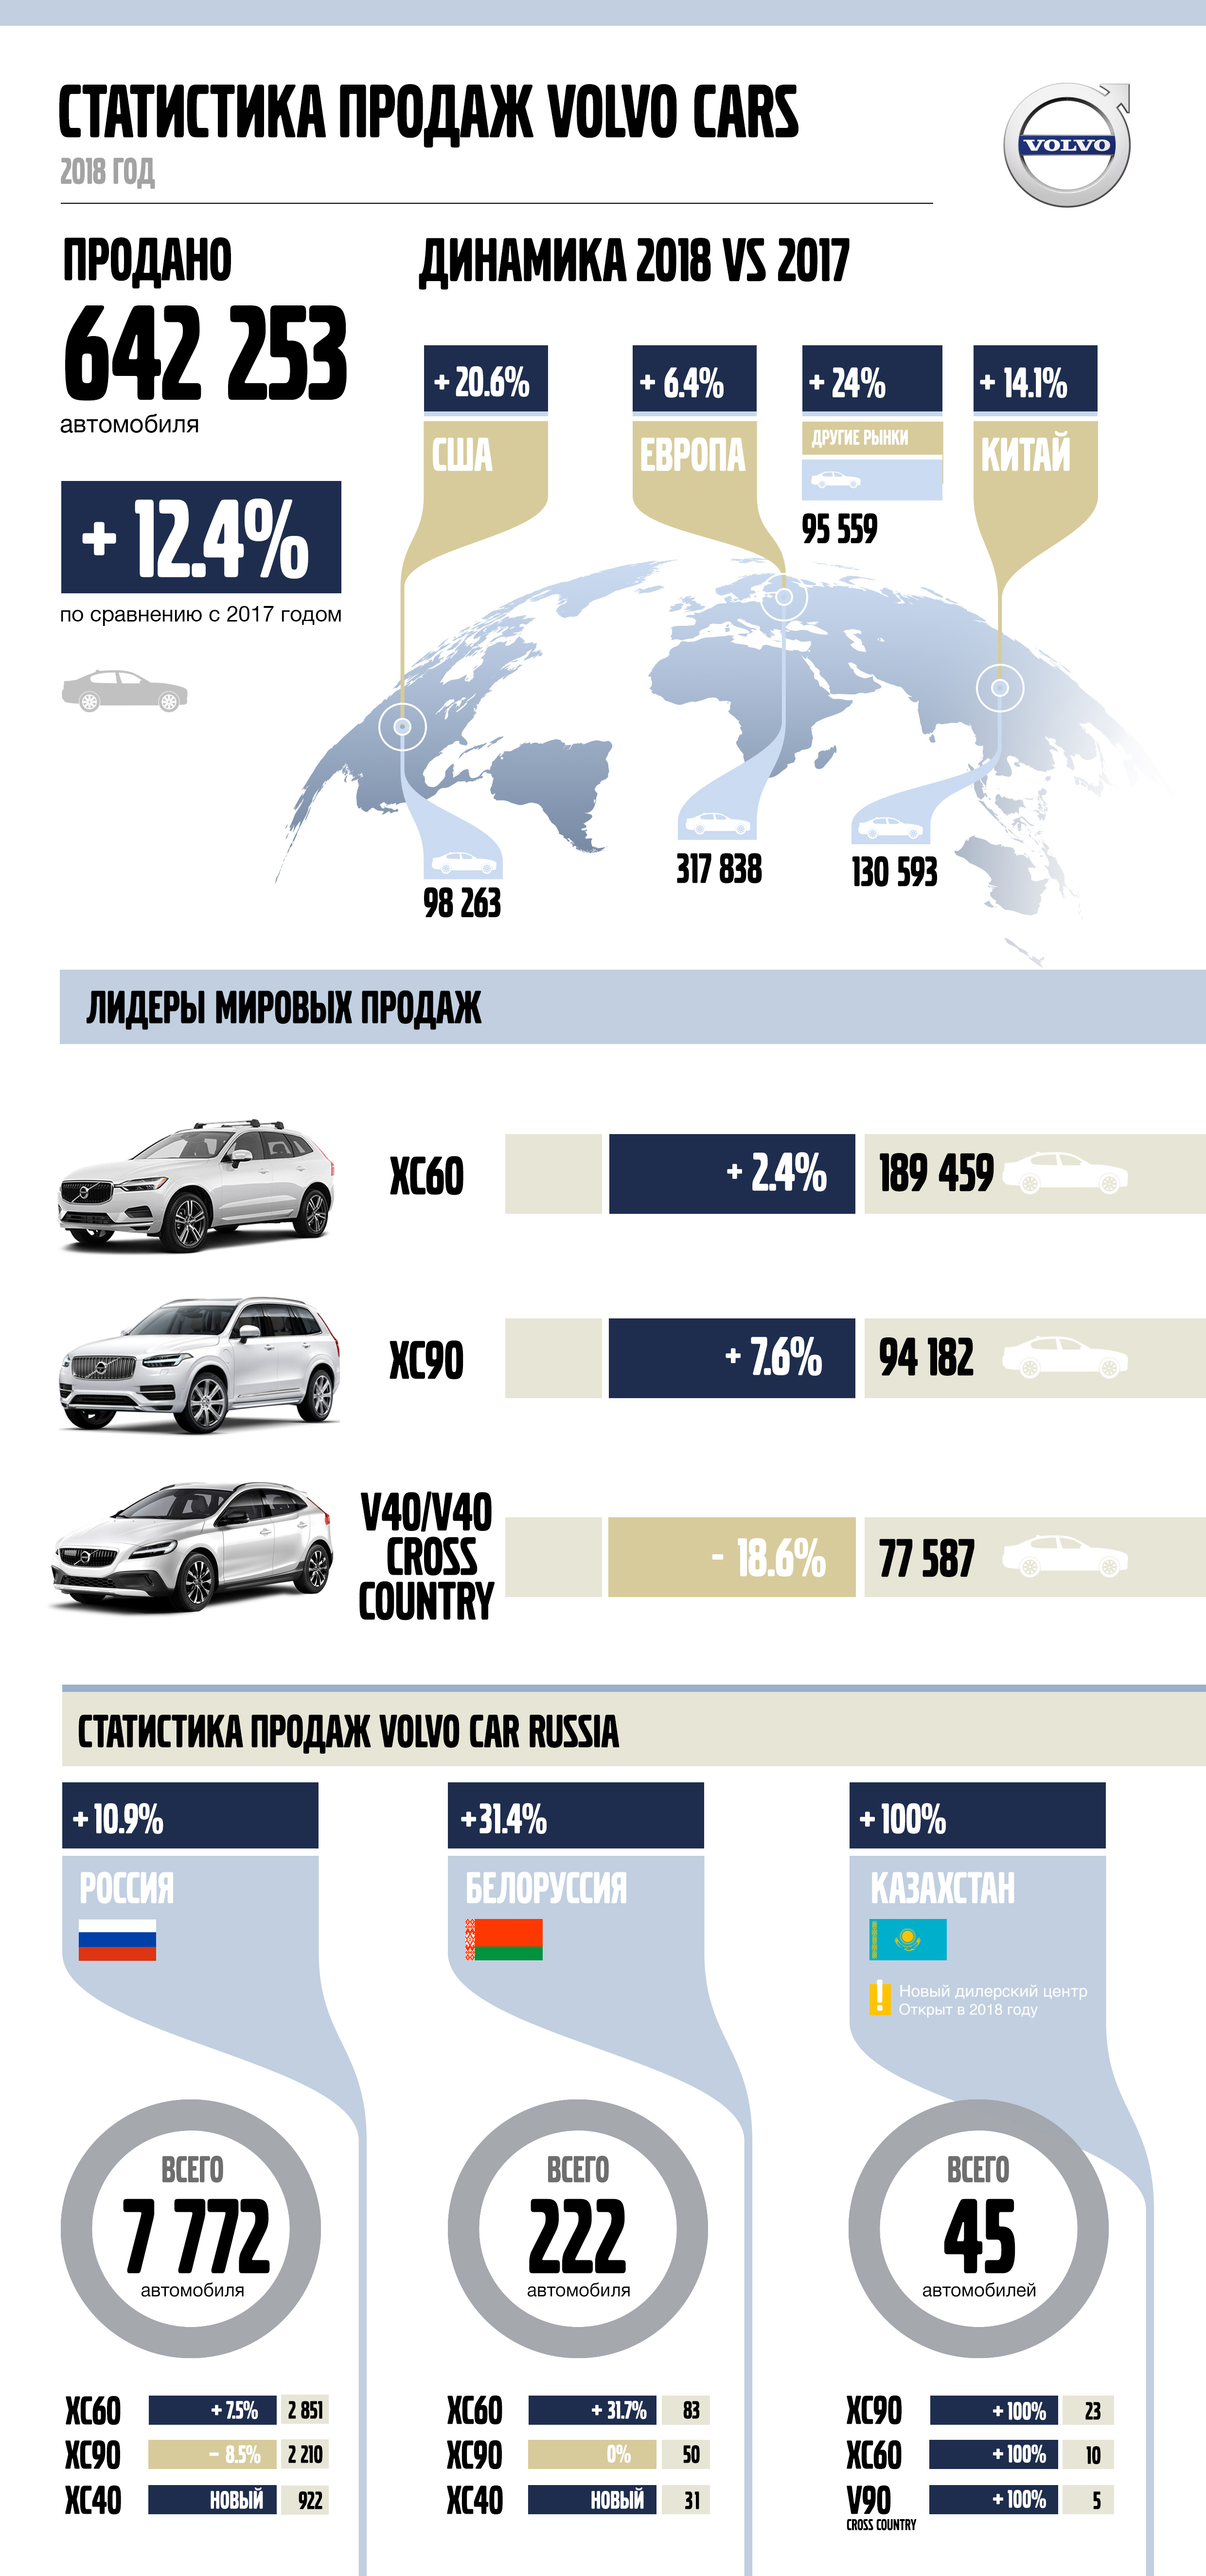 Результаты продаж Volvo Cars в 2018 году